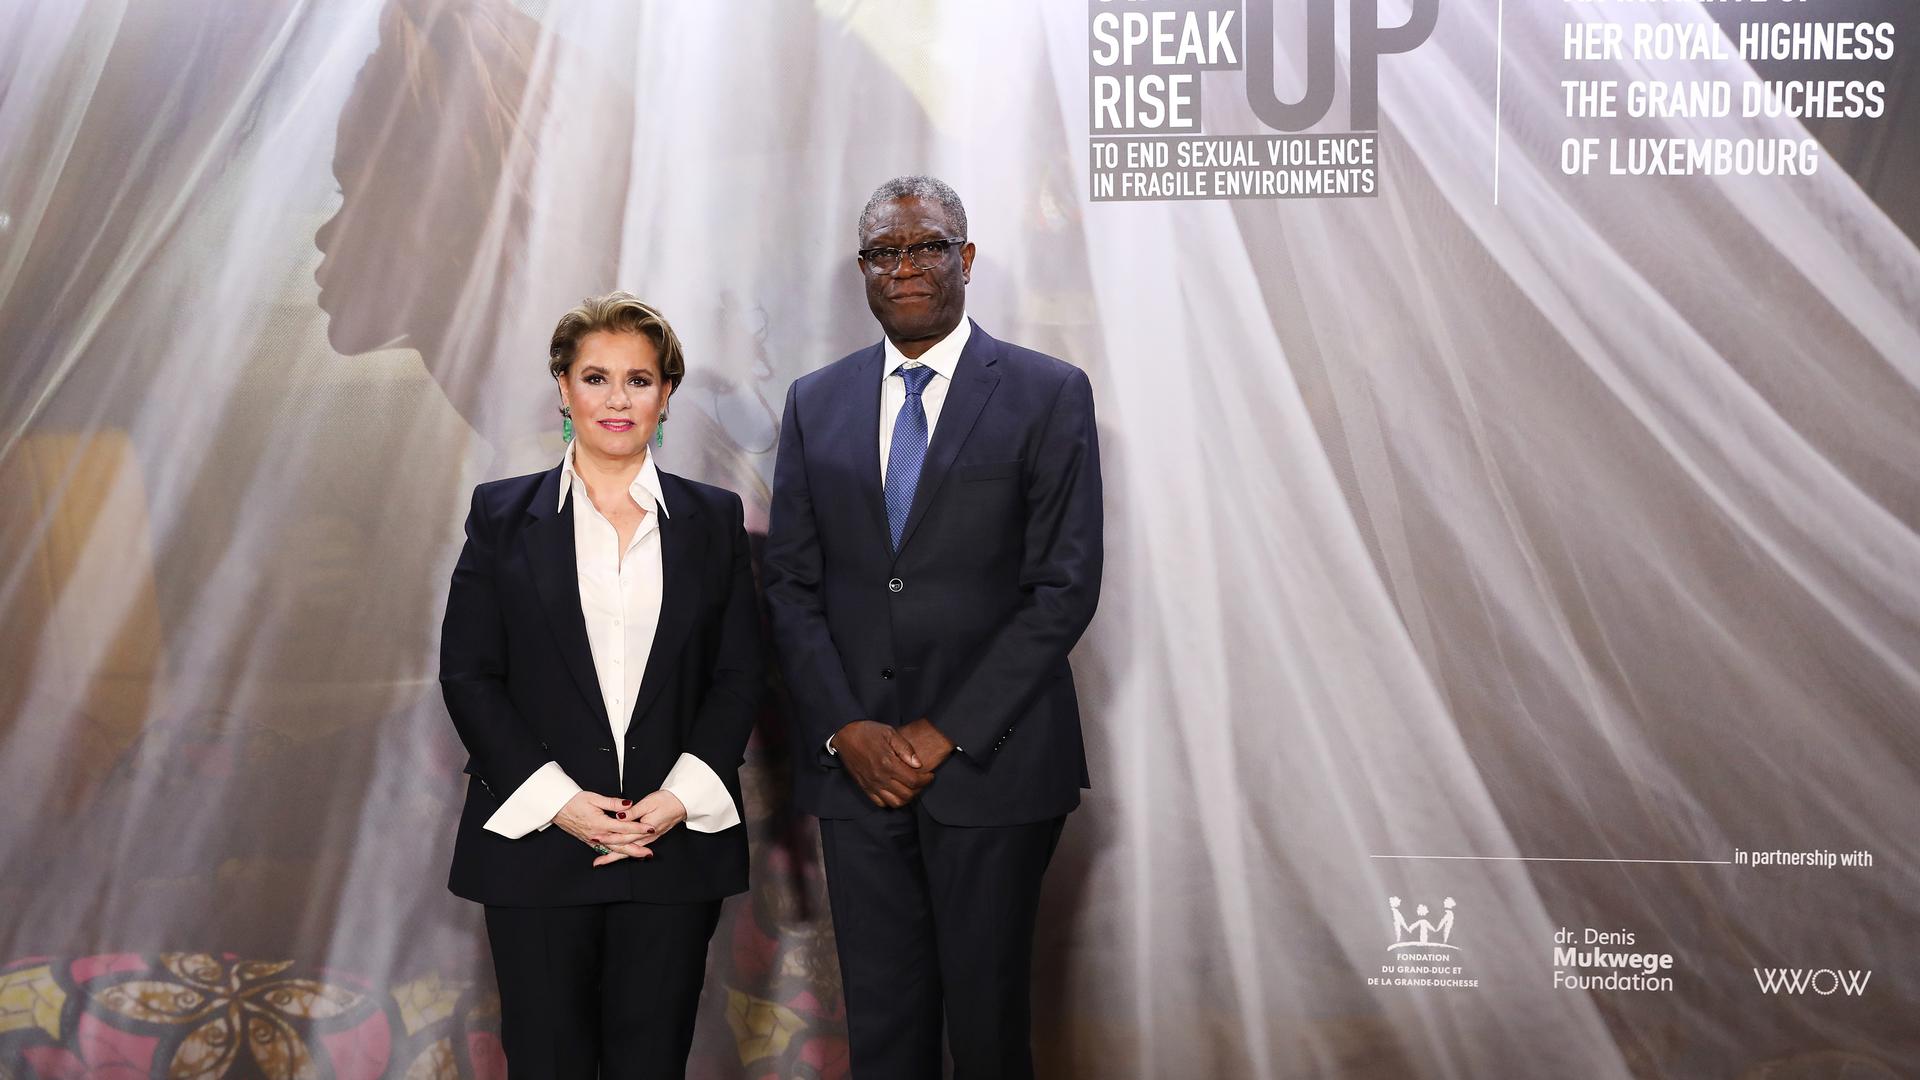 Maria Teresa com Denis Mukwege, médico ginecologista congolês e vencedor do Prémio Nobel da Paz em 2018, numa conferência de imprensa para anunciar o fórum “Stand Speak Rise Up!”, em janeiro de 2019.